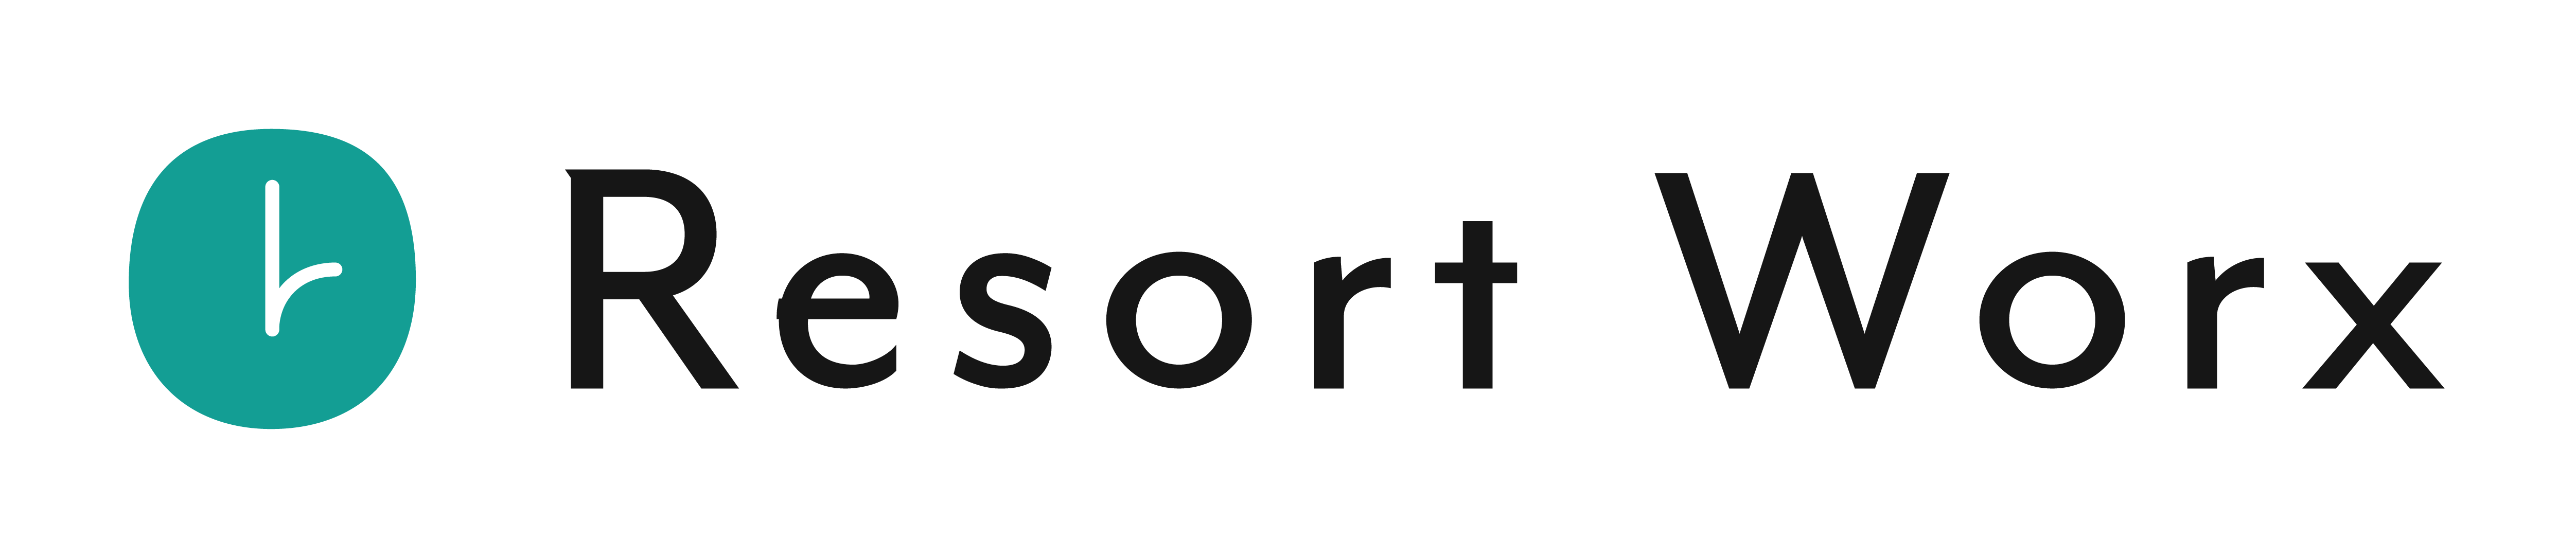 ResortWorx_logo